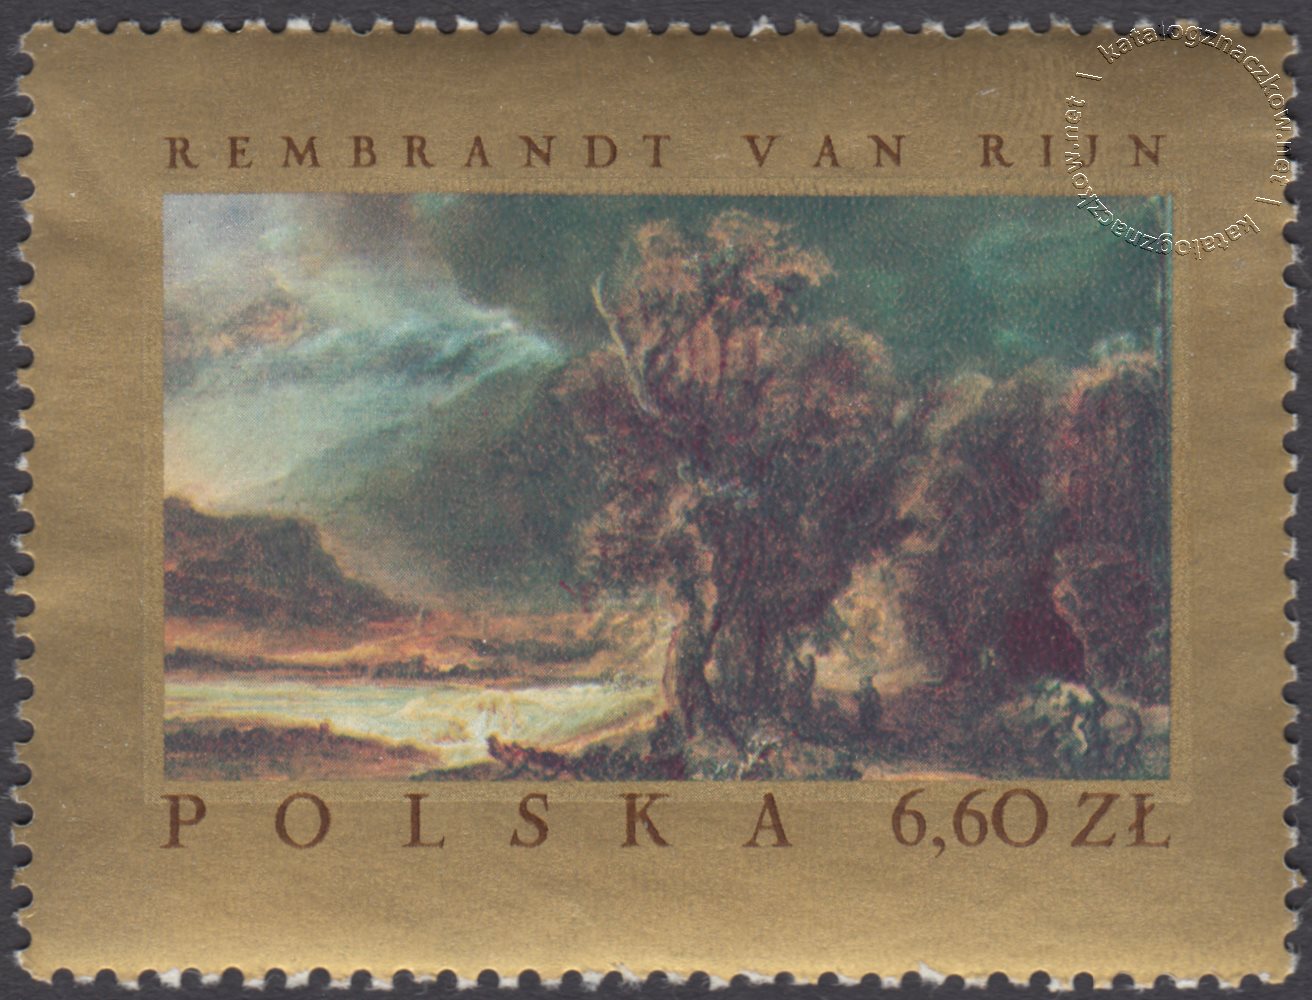 Malarstwo europejskie w muzeach polskich znaczek nr 1668